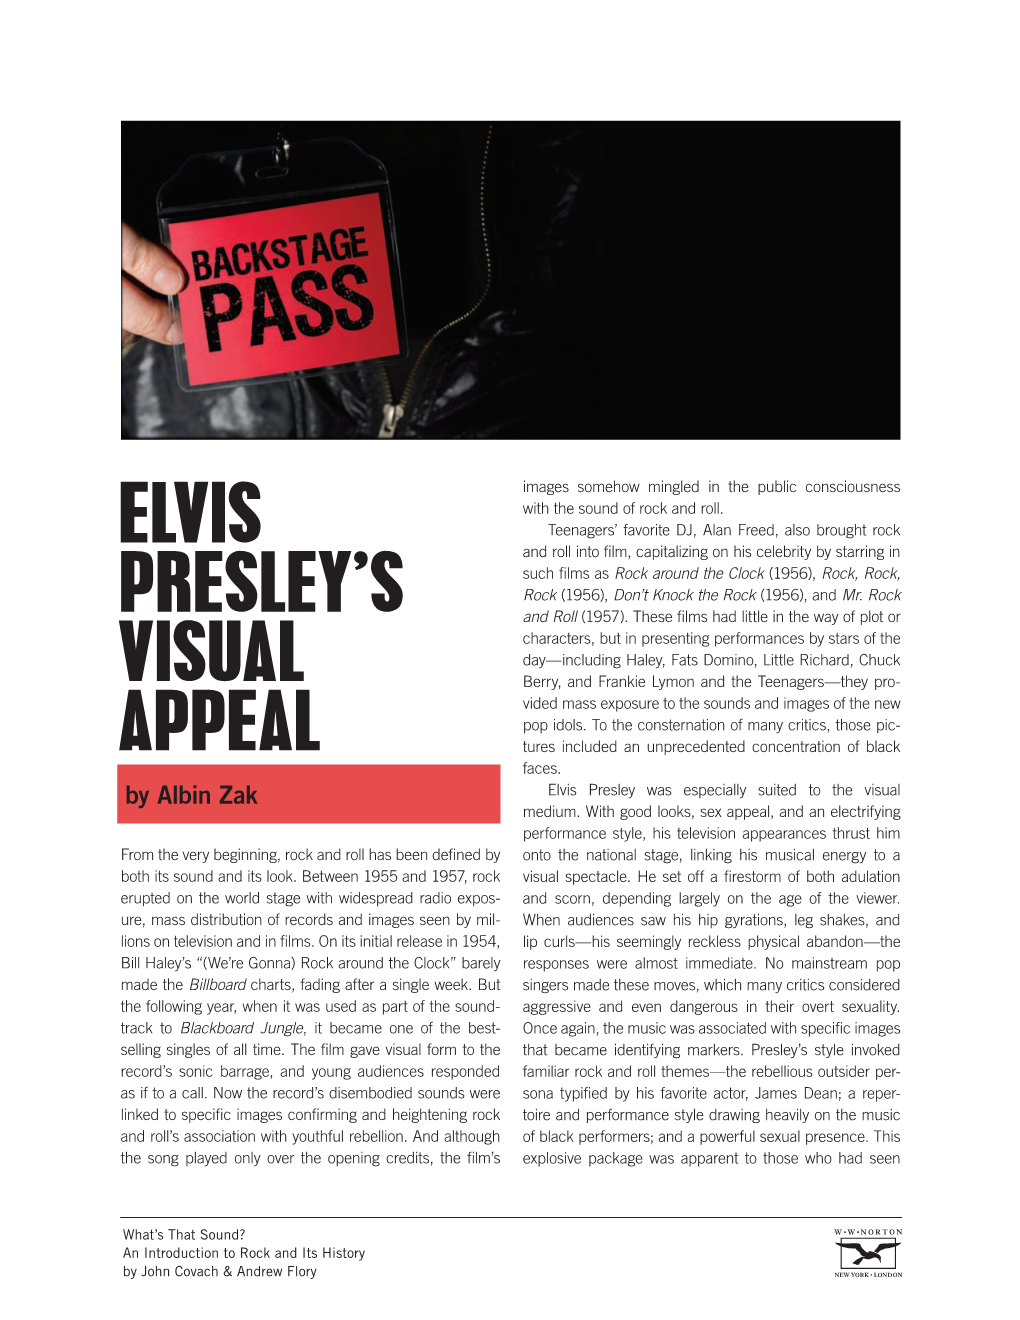 Elvis Presley's Visual Appeal by Albin